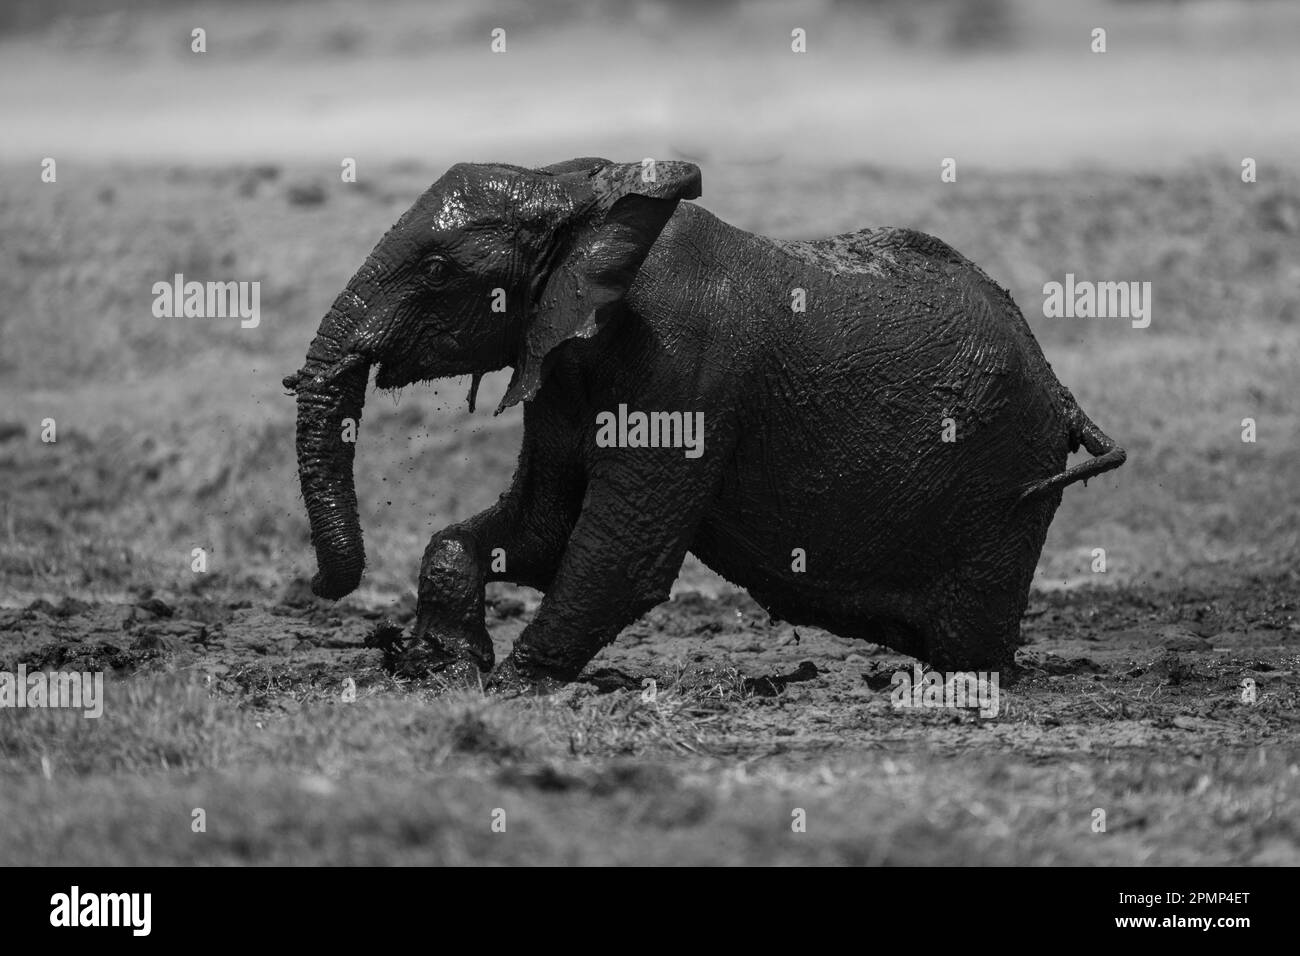 Monochromatique d'un bébé éléphant d'Afrique (Loxodonata africana) luttant dans la boue dans le parc national de Chobe ; Chobe, Botswana Banque D'Images